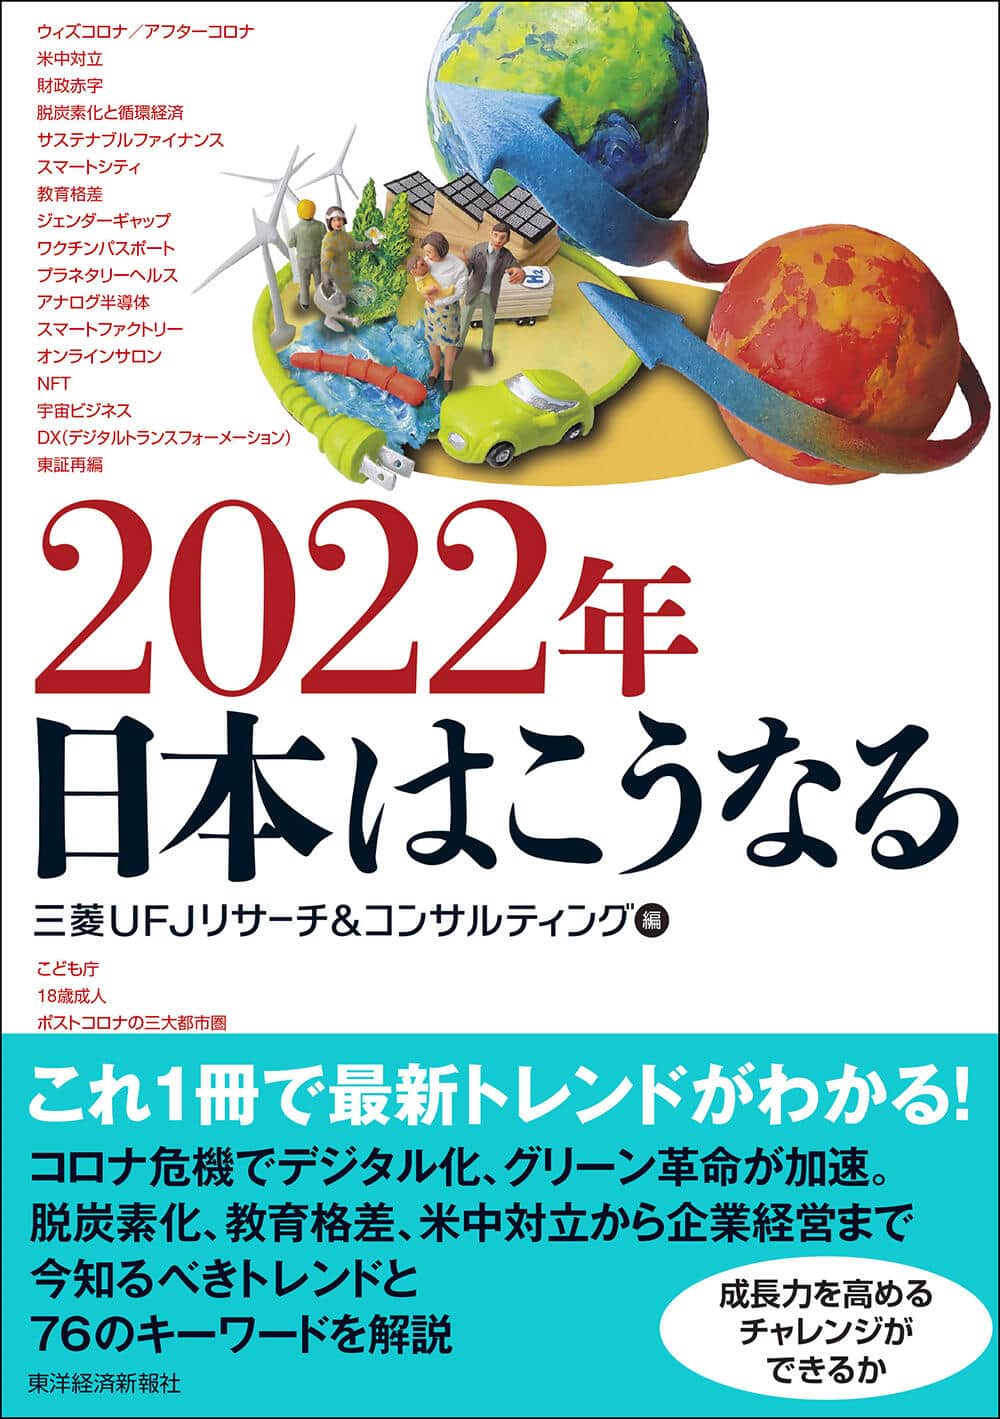 「2022年　日本はこうなる」
三菱UFJリサーチ＆コンサルティング編
1980円（税込